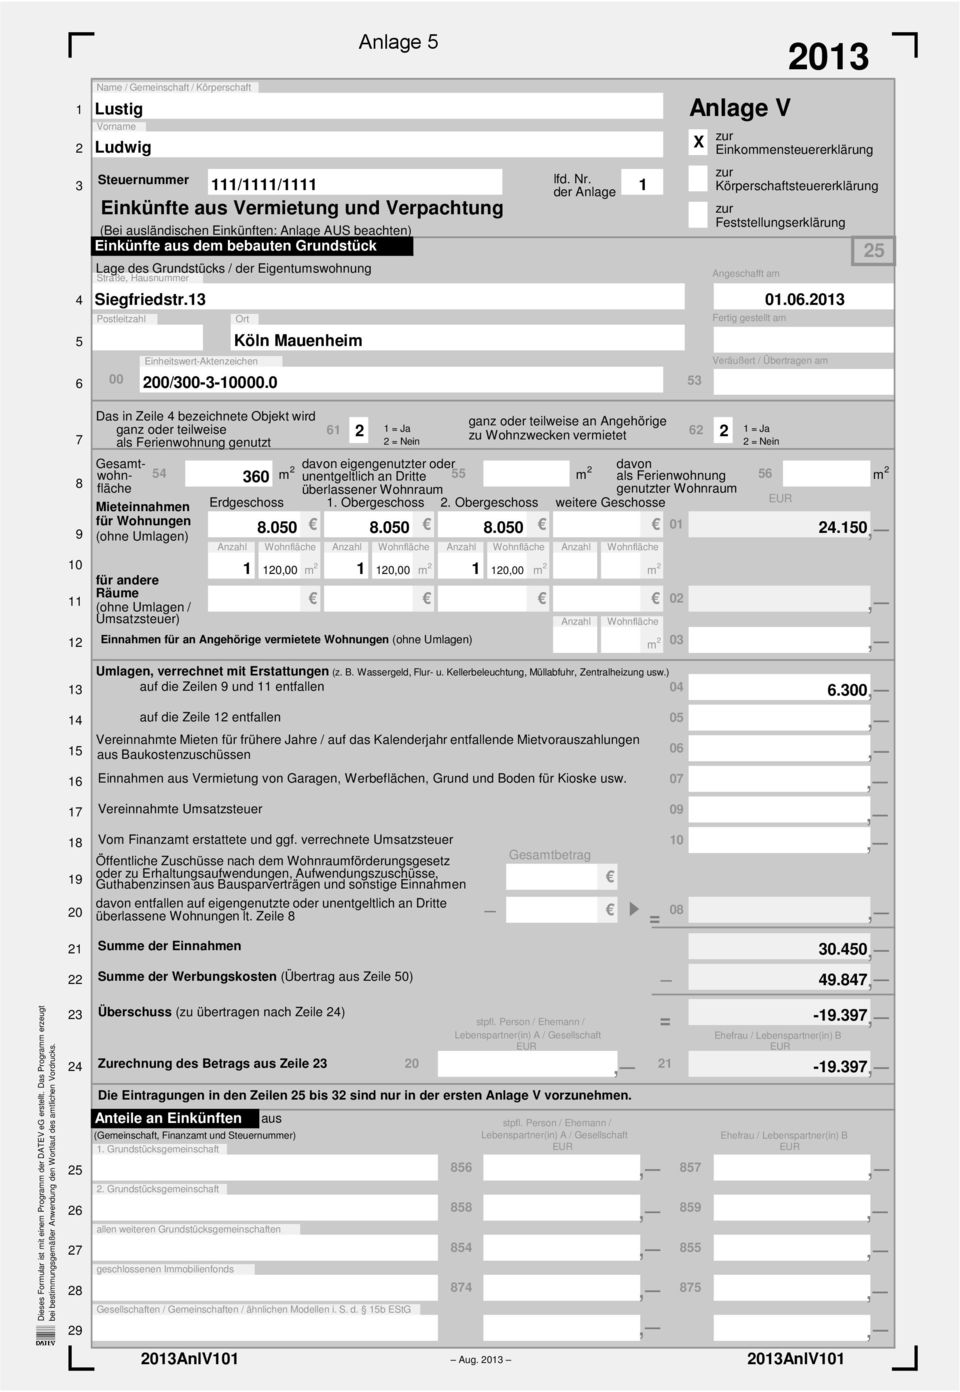 der Anlage 1 zur Körperschaftsteuererklärung zur Feststellungserklärung Angeschafft am Fertig gestellt am 01.06.2013 25 6 00 Einheitswert-Aktenzeichen 200/300-3-10000.